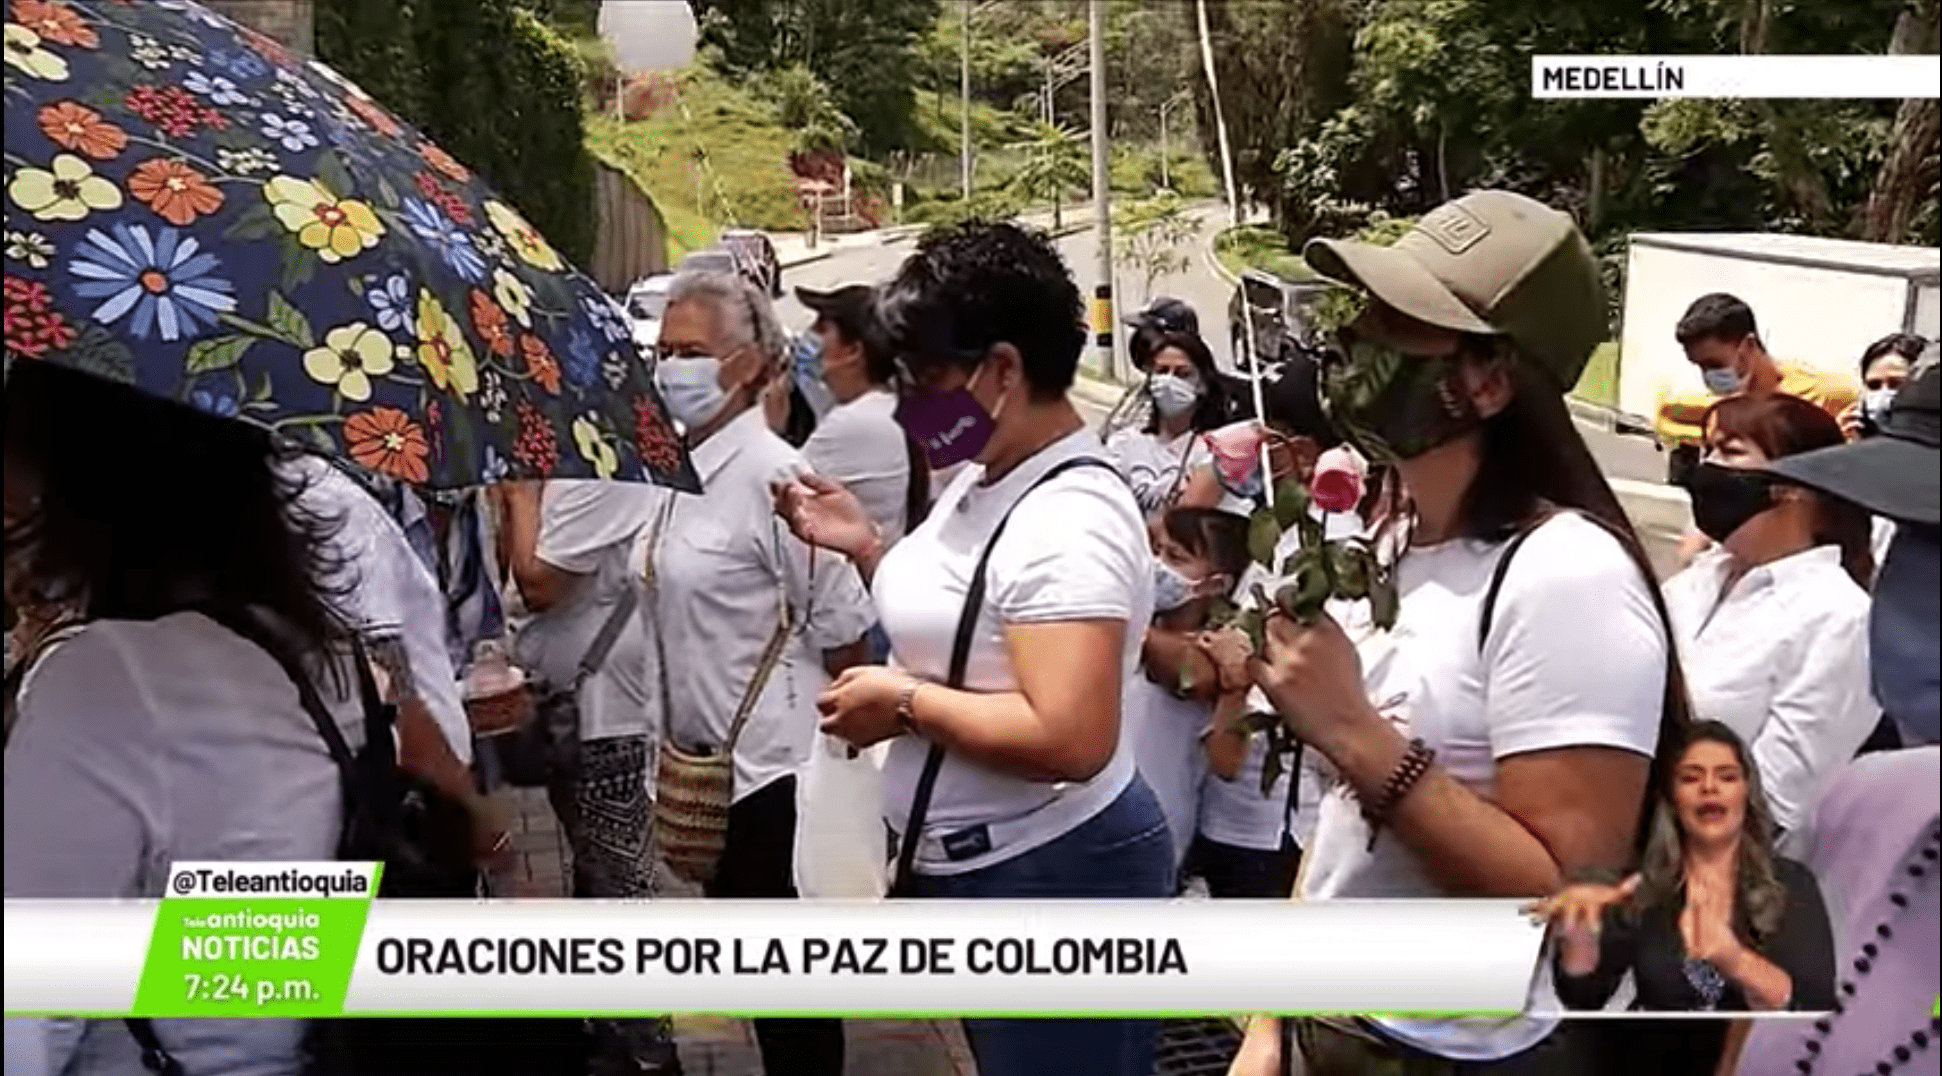 Oraciones por la paz de Colombia